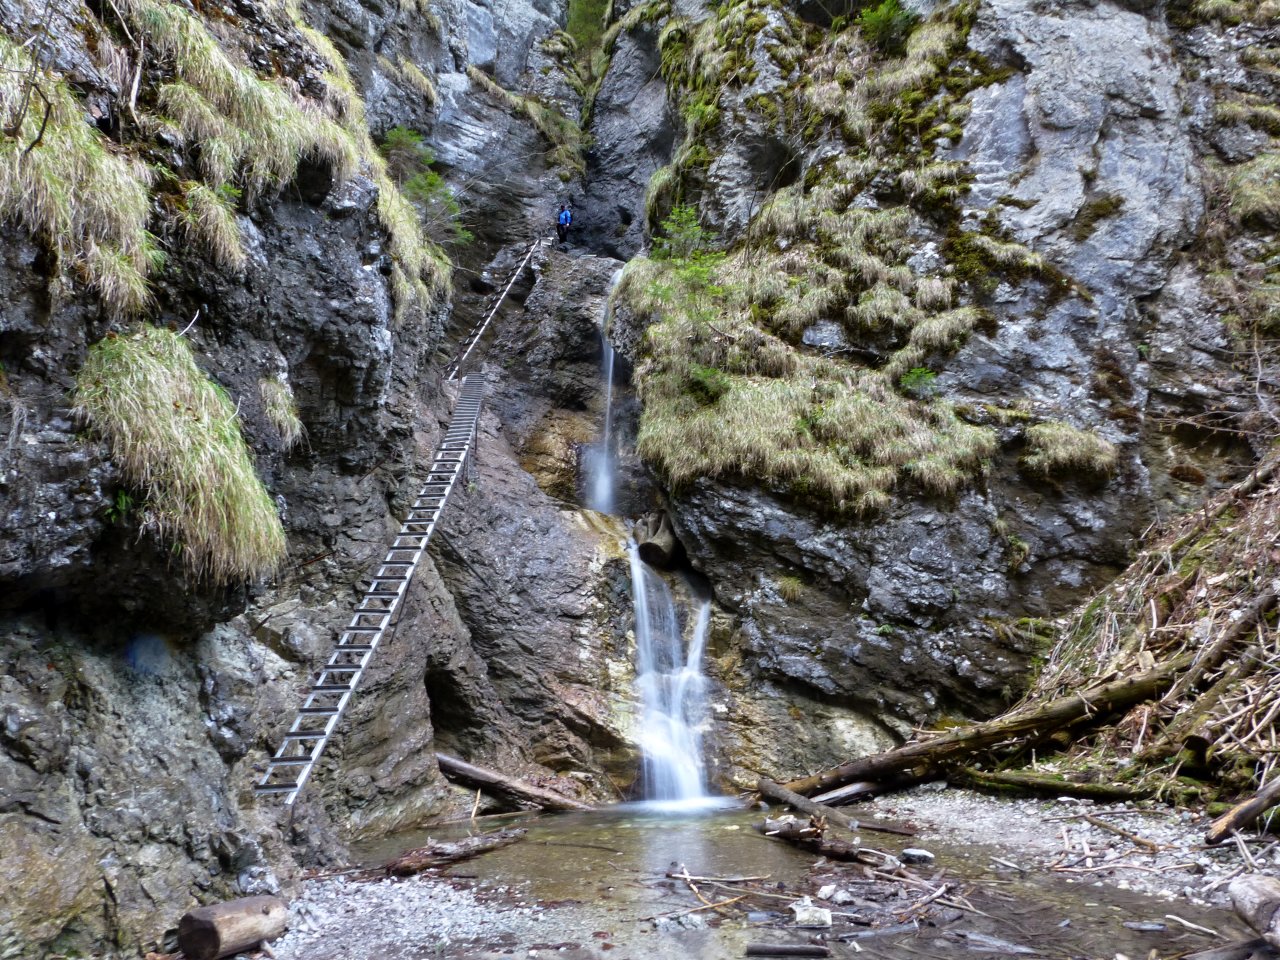 Suchá Belá gorge, Slovak Paradise National Park, Slovakia